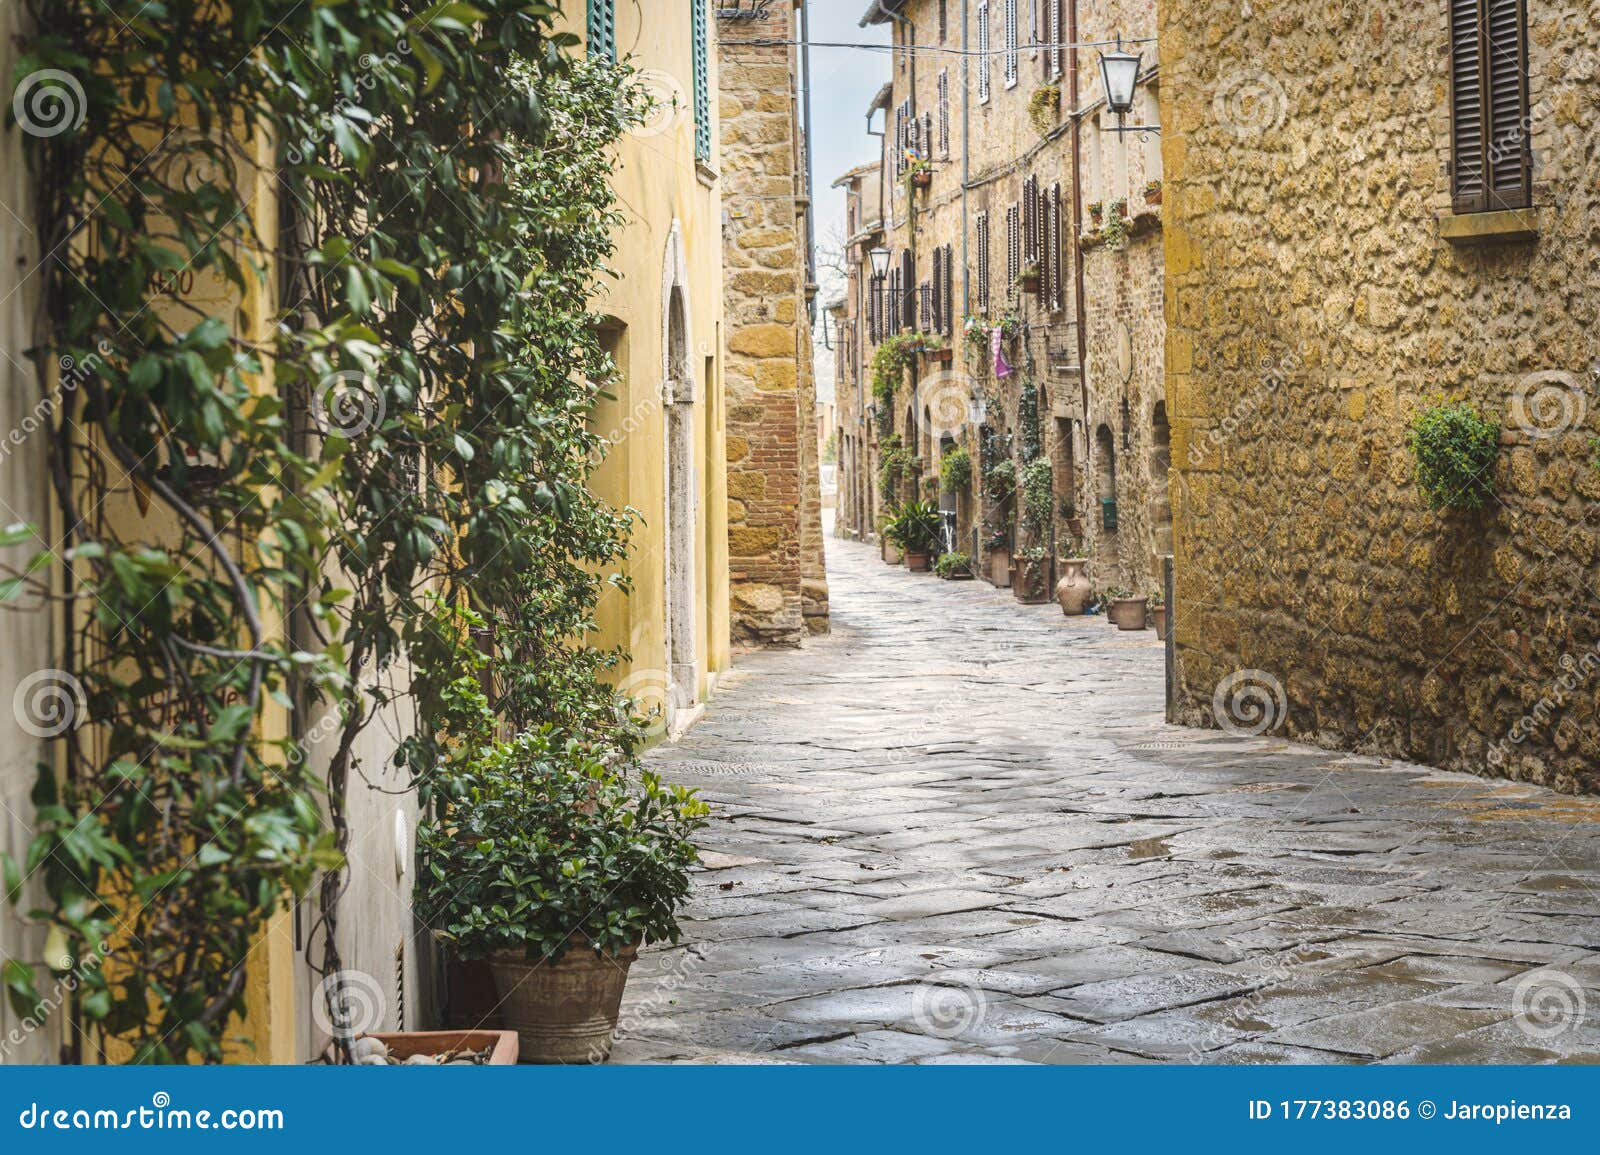 意大利托斯卡纳皮恩扎镇的中世纪街道高清摄影大图-千库网